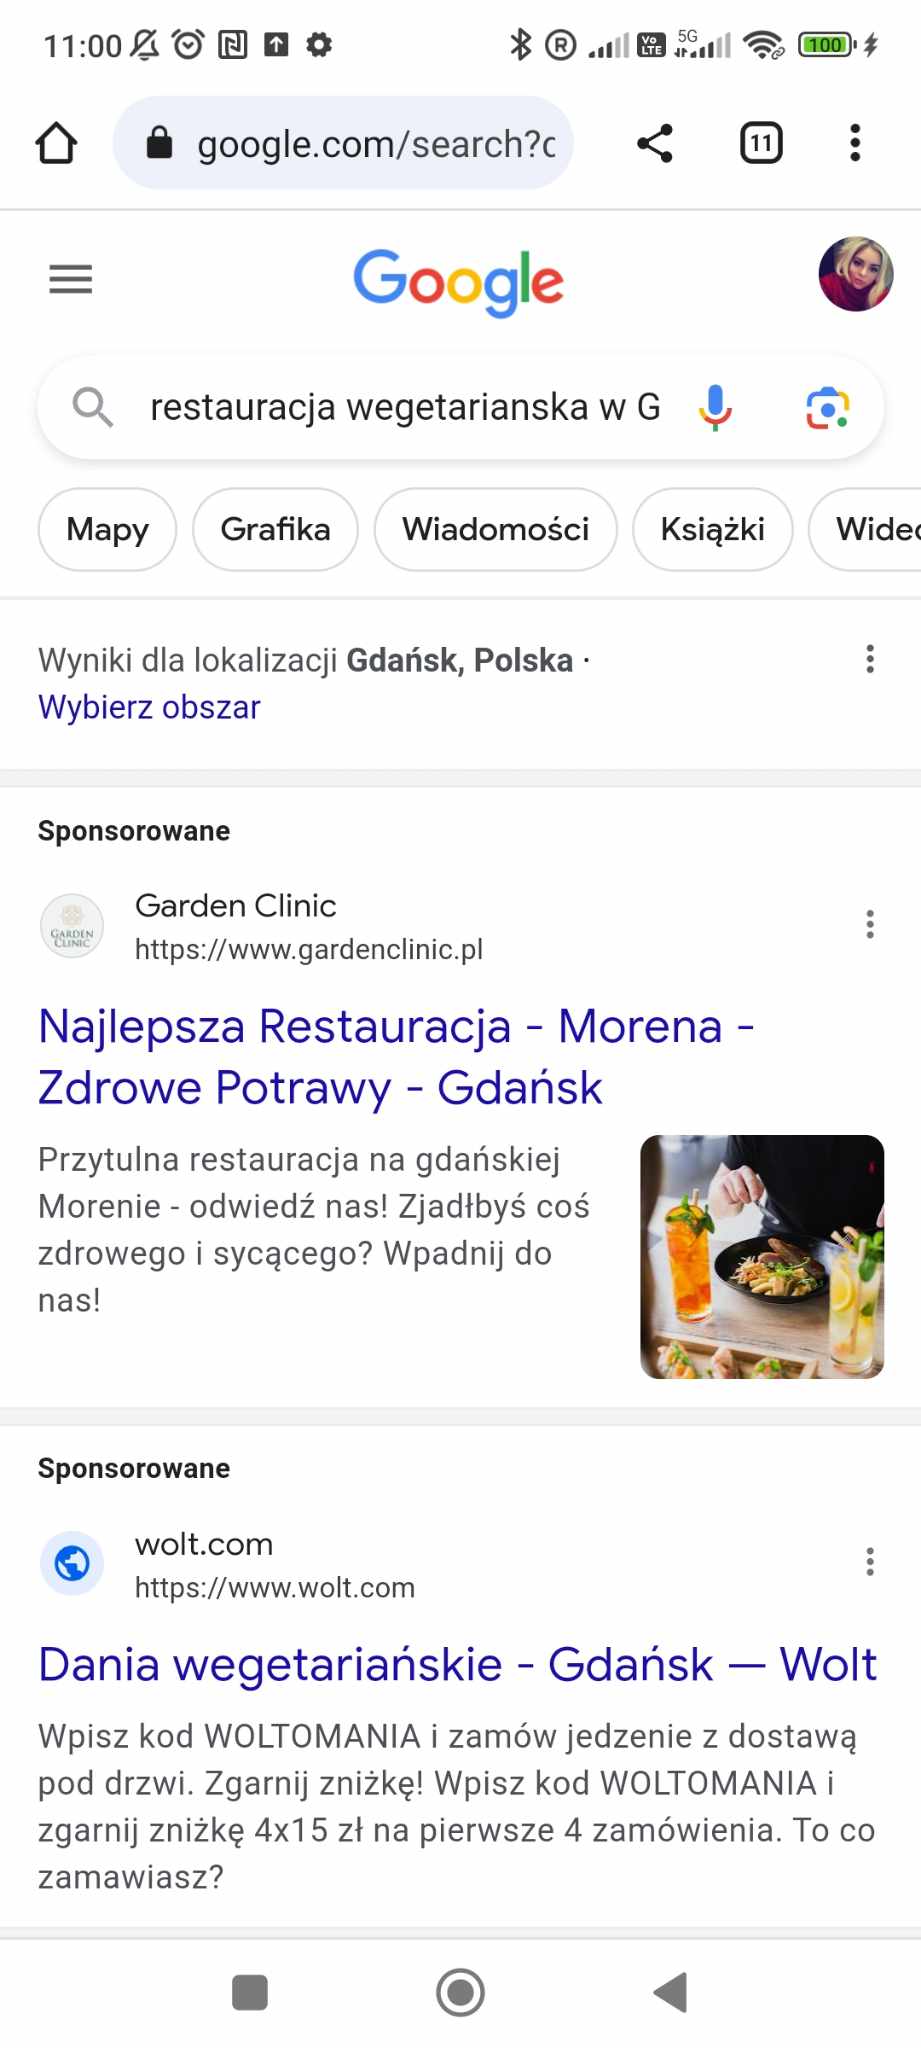 Specjalista Wizytówki Google Maps - Łukasz Wudyka